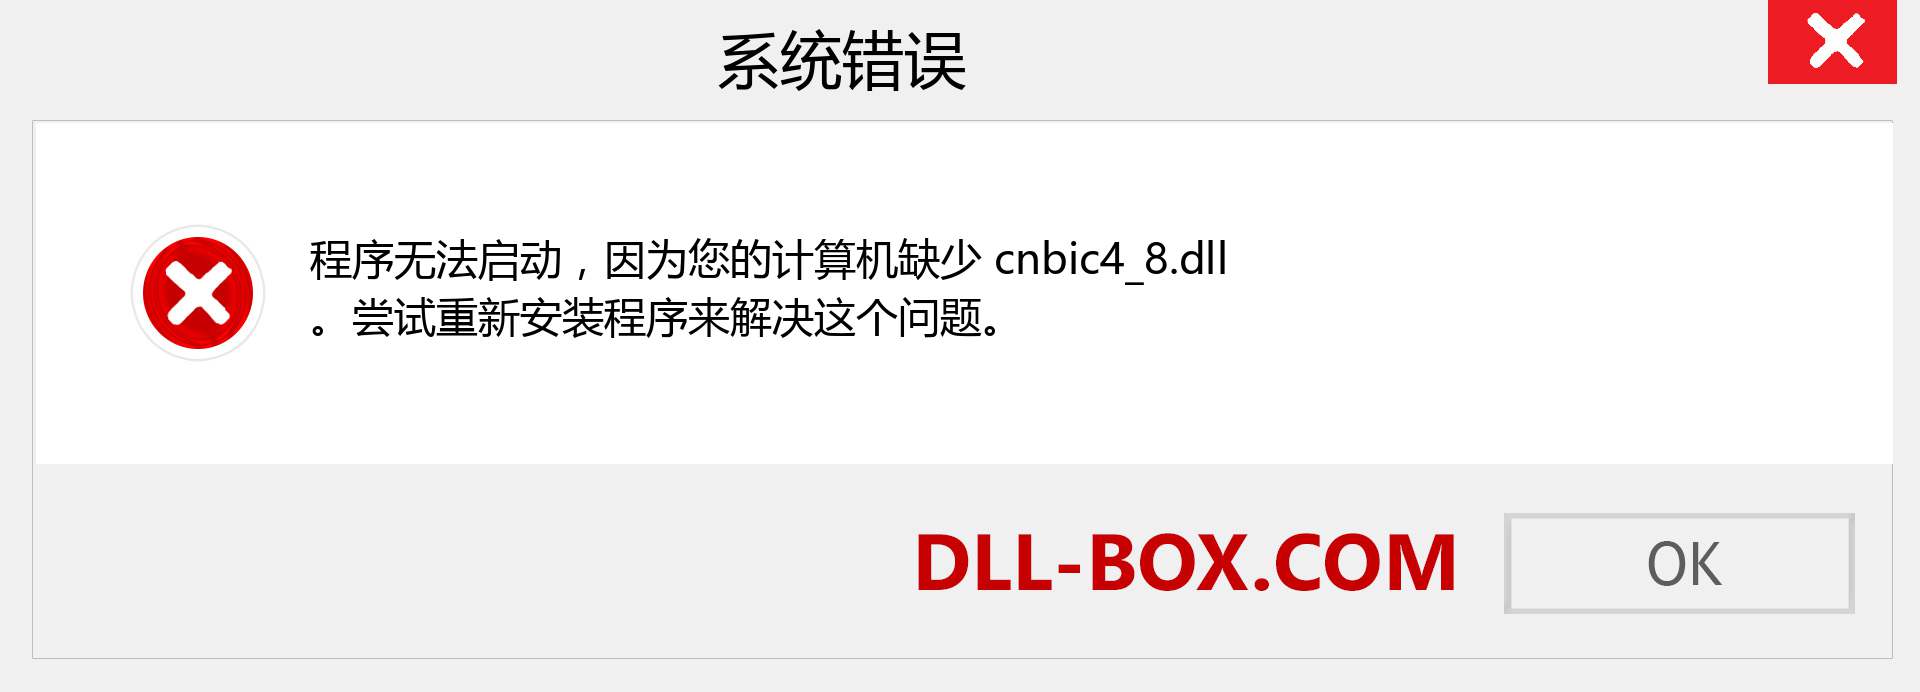 cnbic4_8.dll 文件丢失？。 适用于 Windows 7、8、10 的下载 - 修复 Windows、照片、图像上的 cnbic4_8 dll 丢失错误